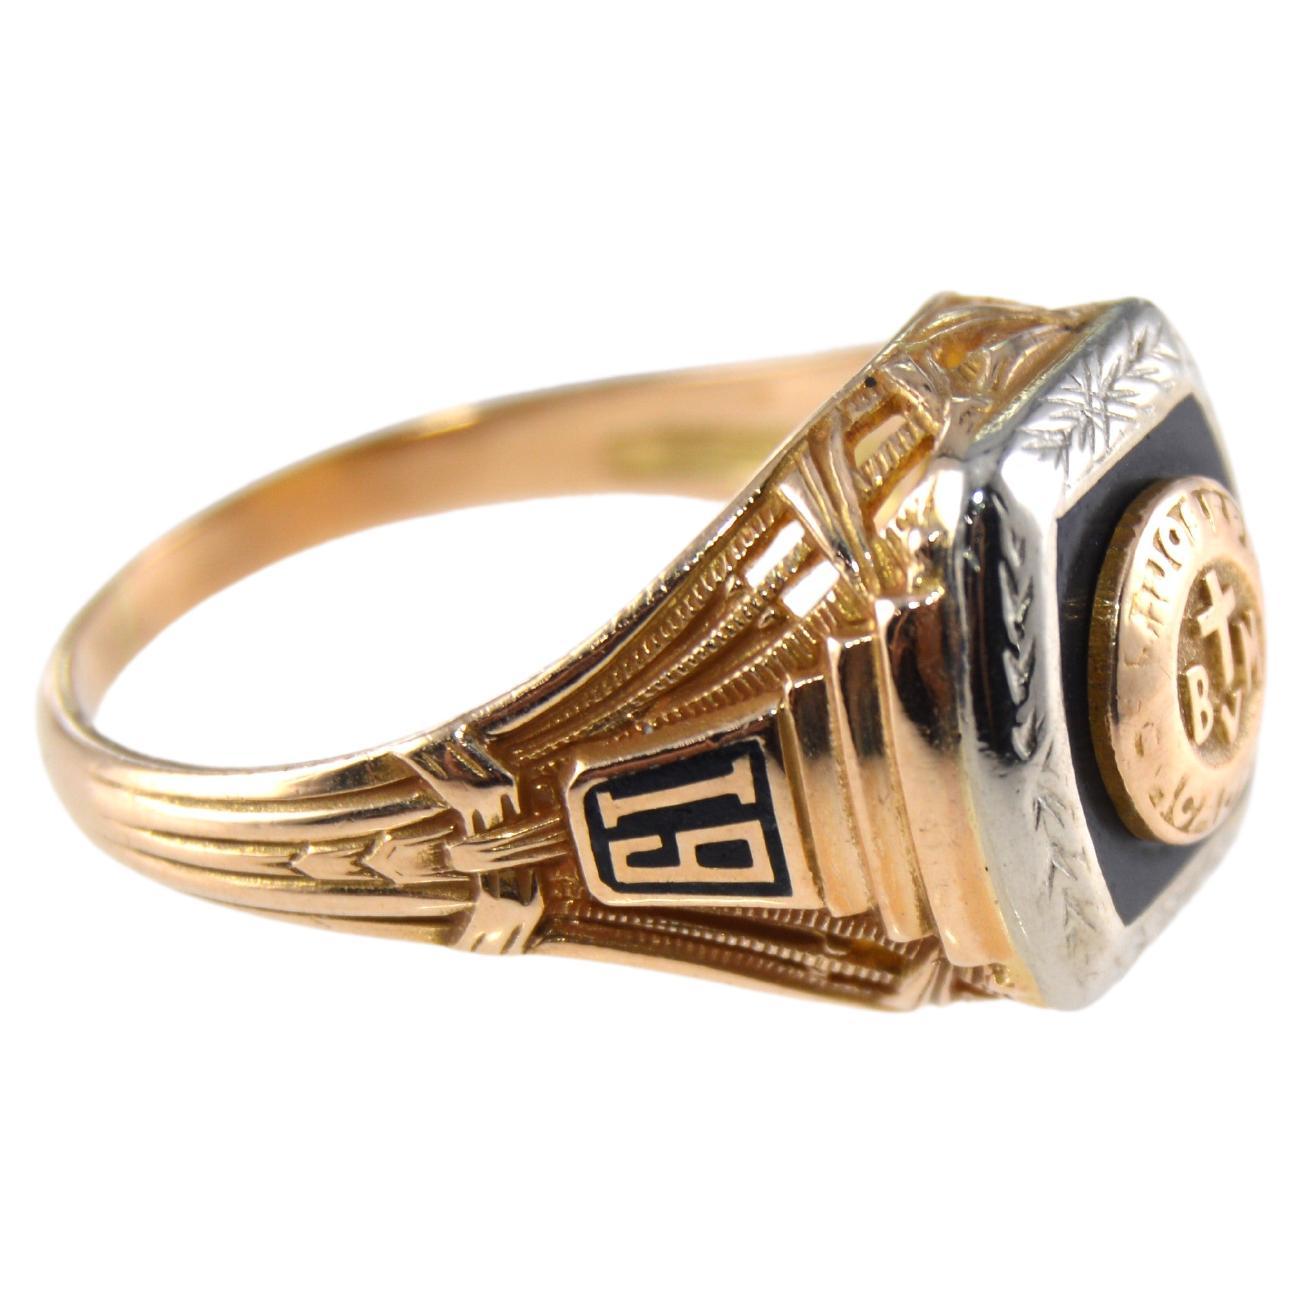 UNISEX RING
STIL / REFERENZ: Art Deco
METALL / MATERIAL: 10Kt. Massiv Gold Mehrfarbig
CIRCA / JAHR: 1931 
GRÖSSE: 5.5

Dieser charmant aussehende Ring ist komplett handgefertigt aus zweifarbigem Gold mit einer Onyxsteineinlage. Es ist handgraviert